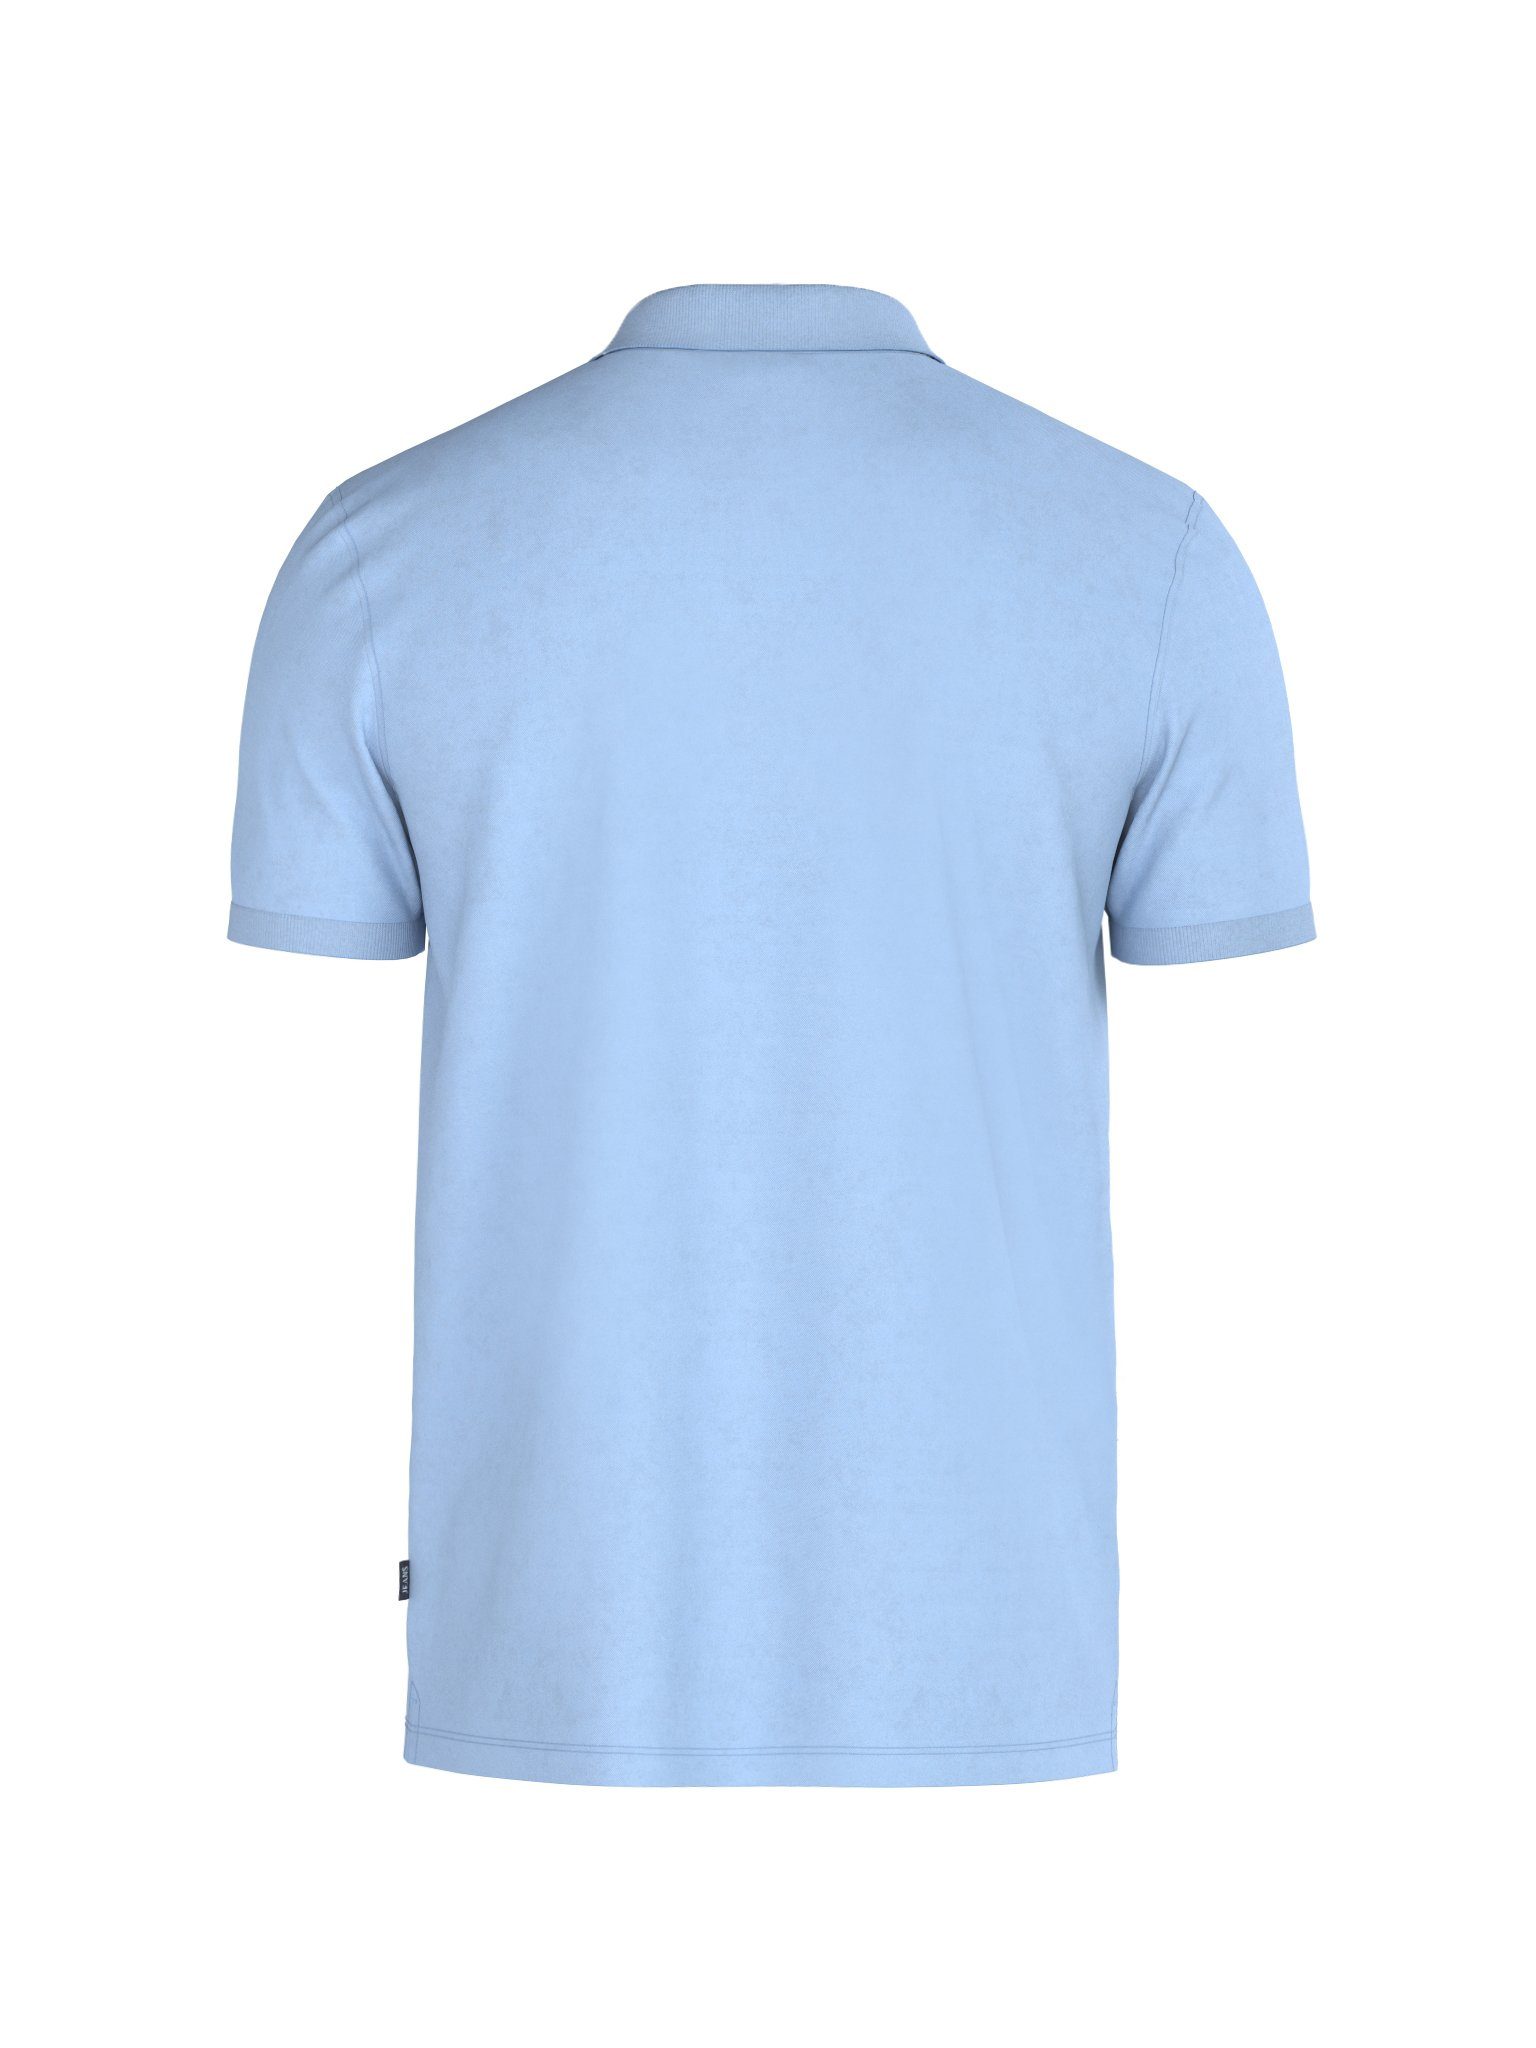 blau Jeans JJJ-02Ambrosio tonigem Logo-Stitching Poloshirt Joop mit